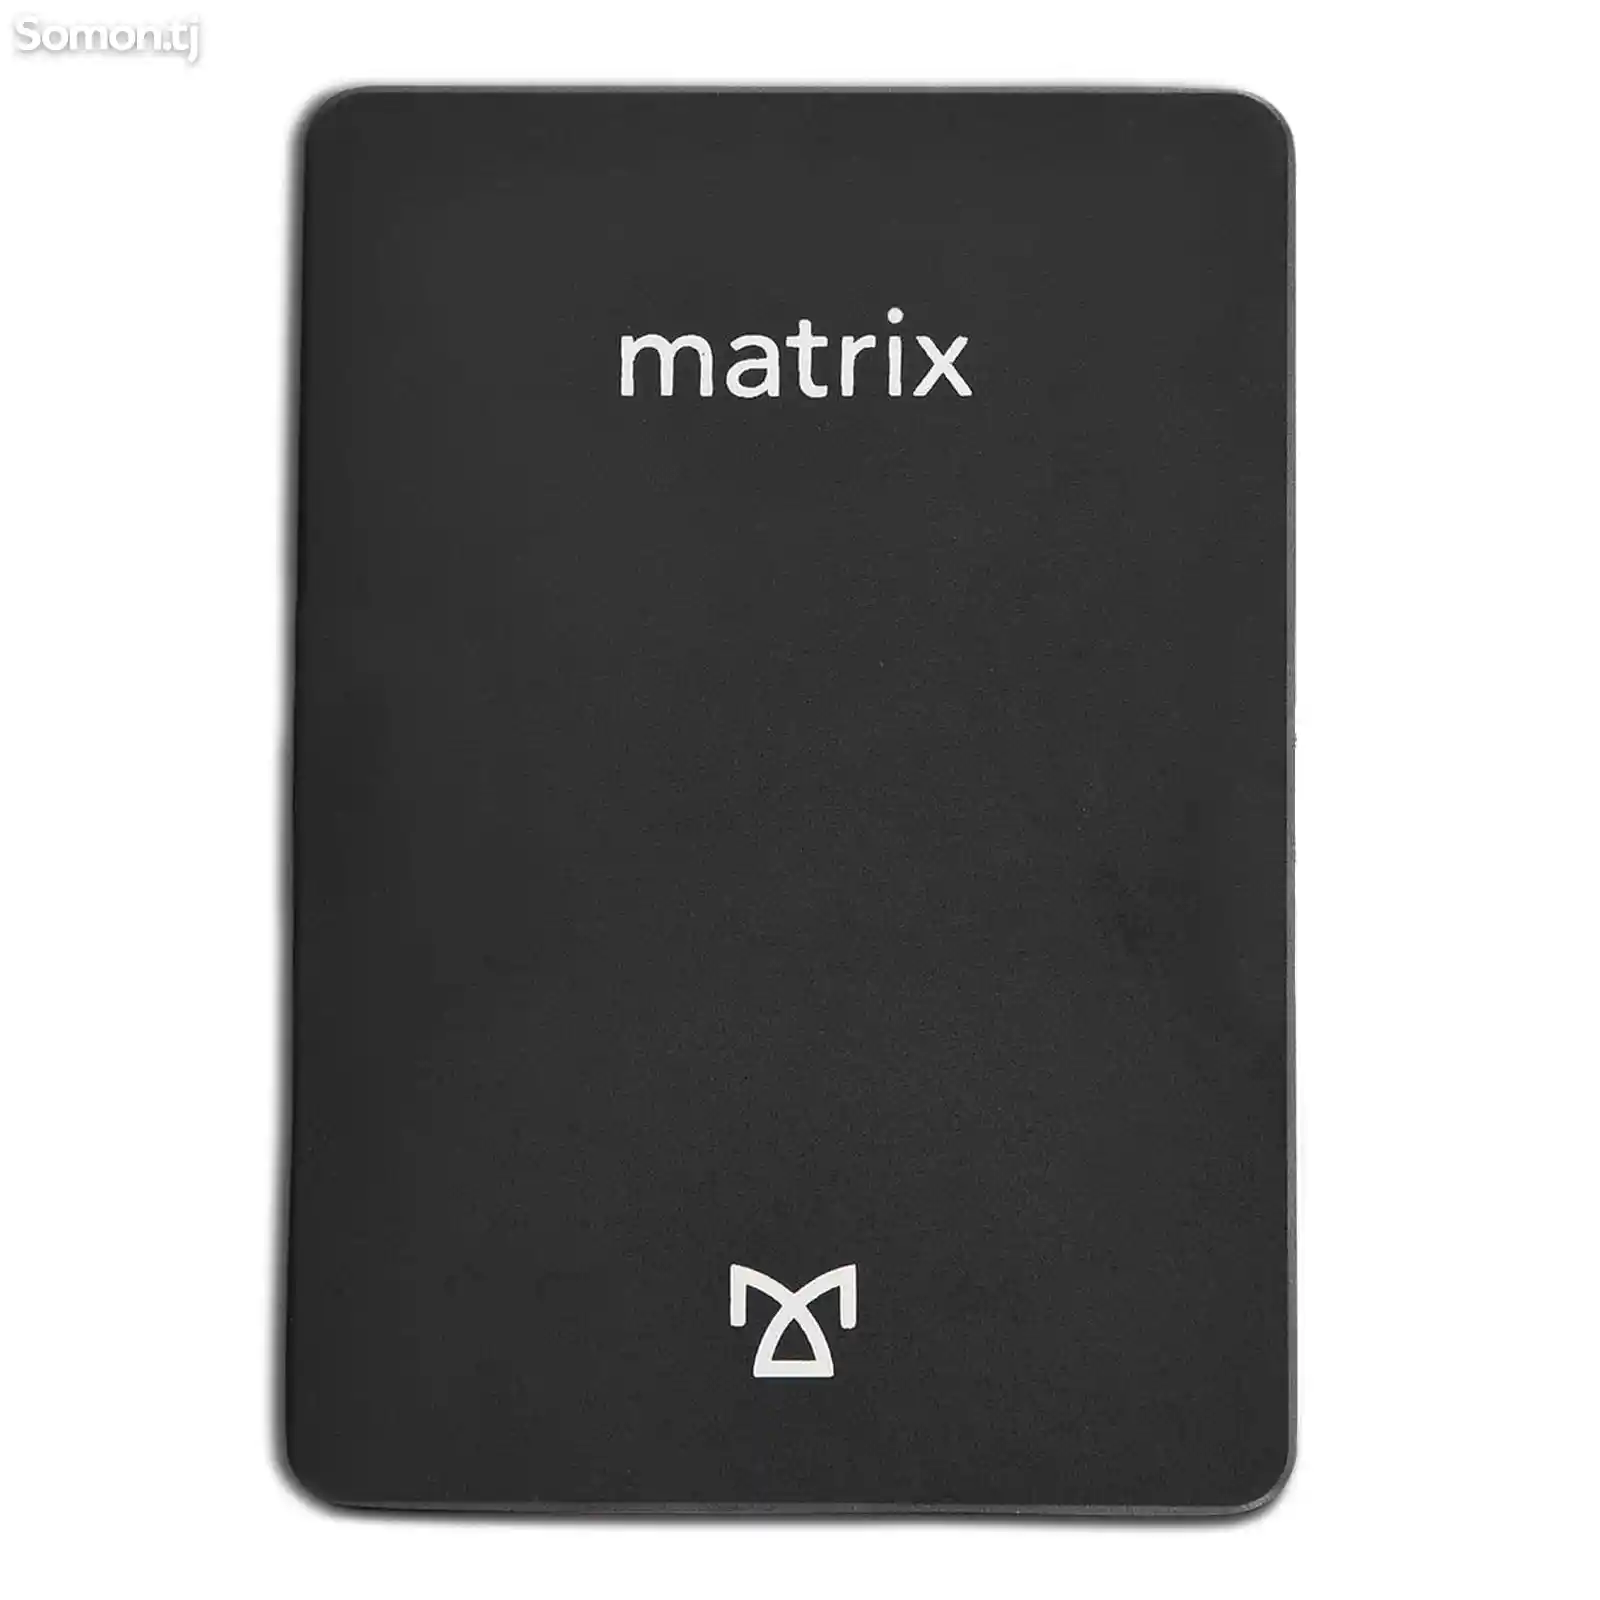 SSD Matrix 512GB 3D Nand Flash-2